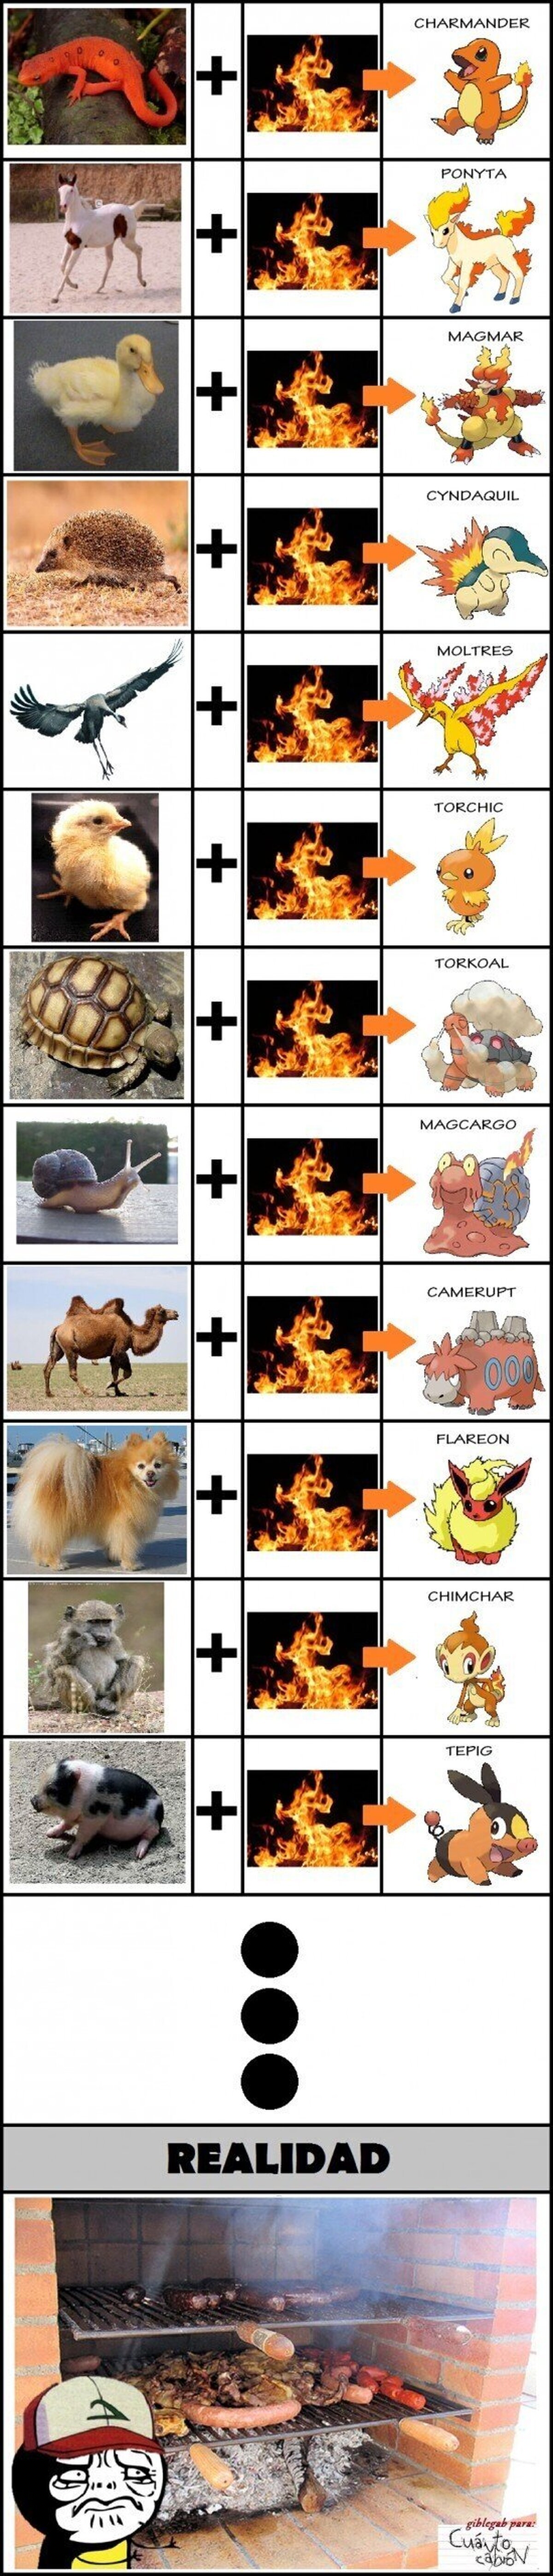 Pokémon de fuego